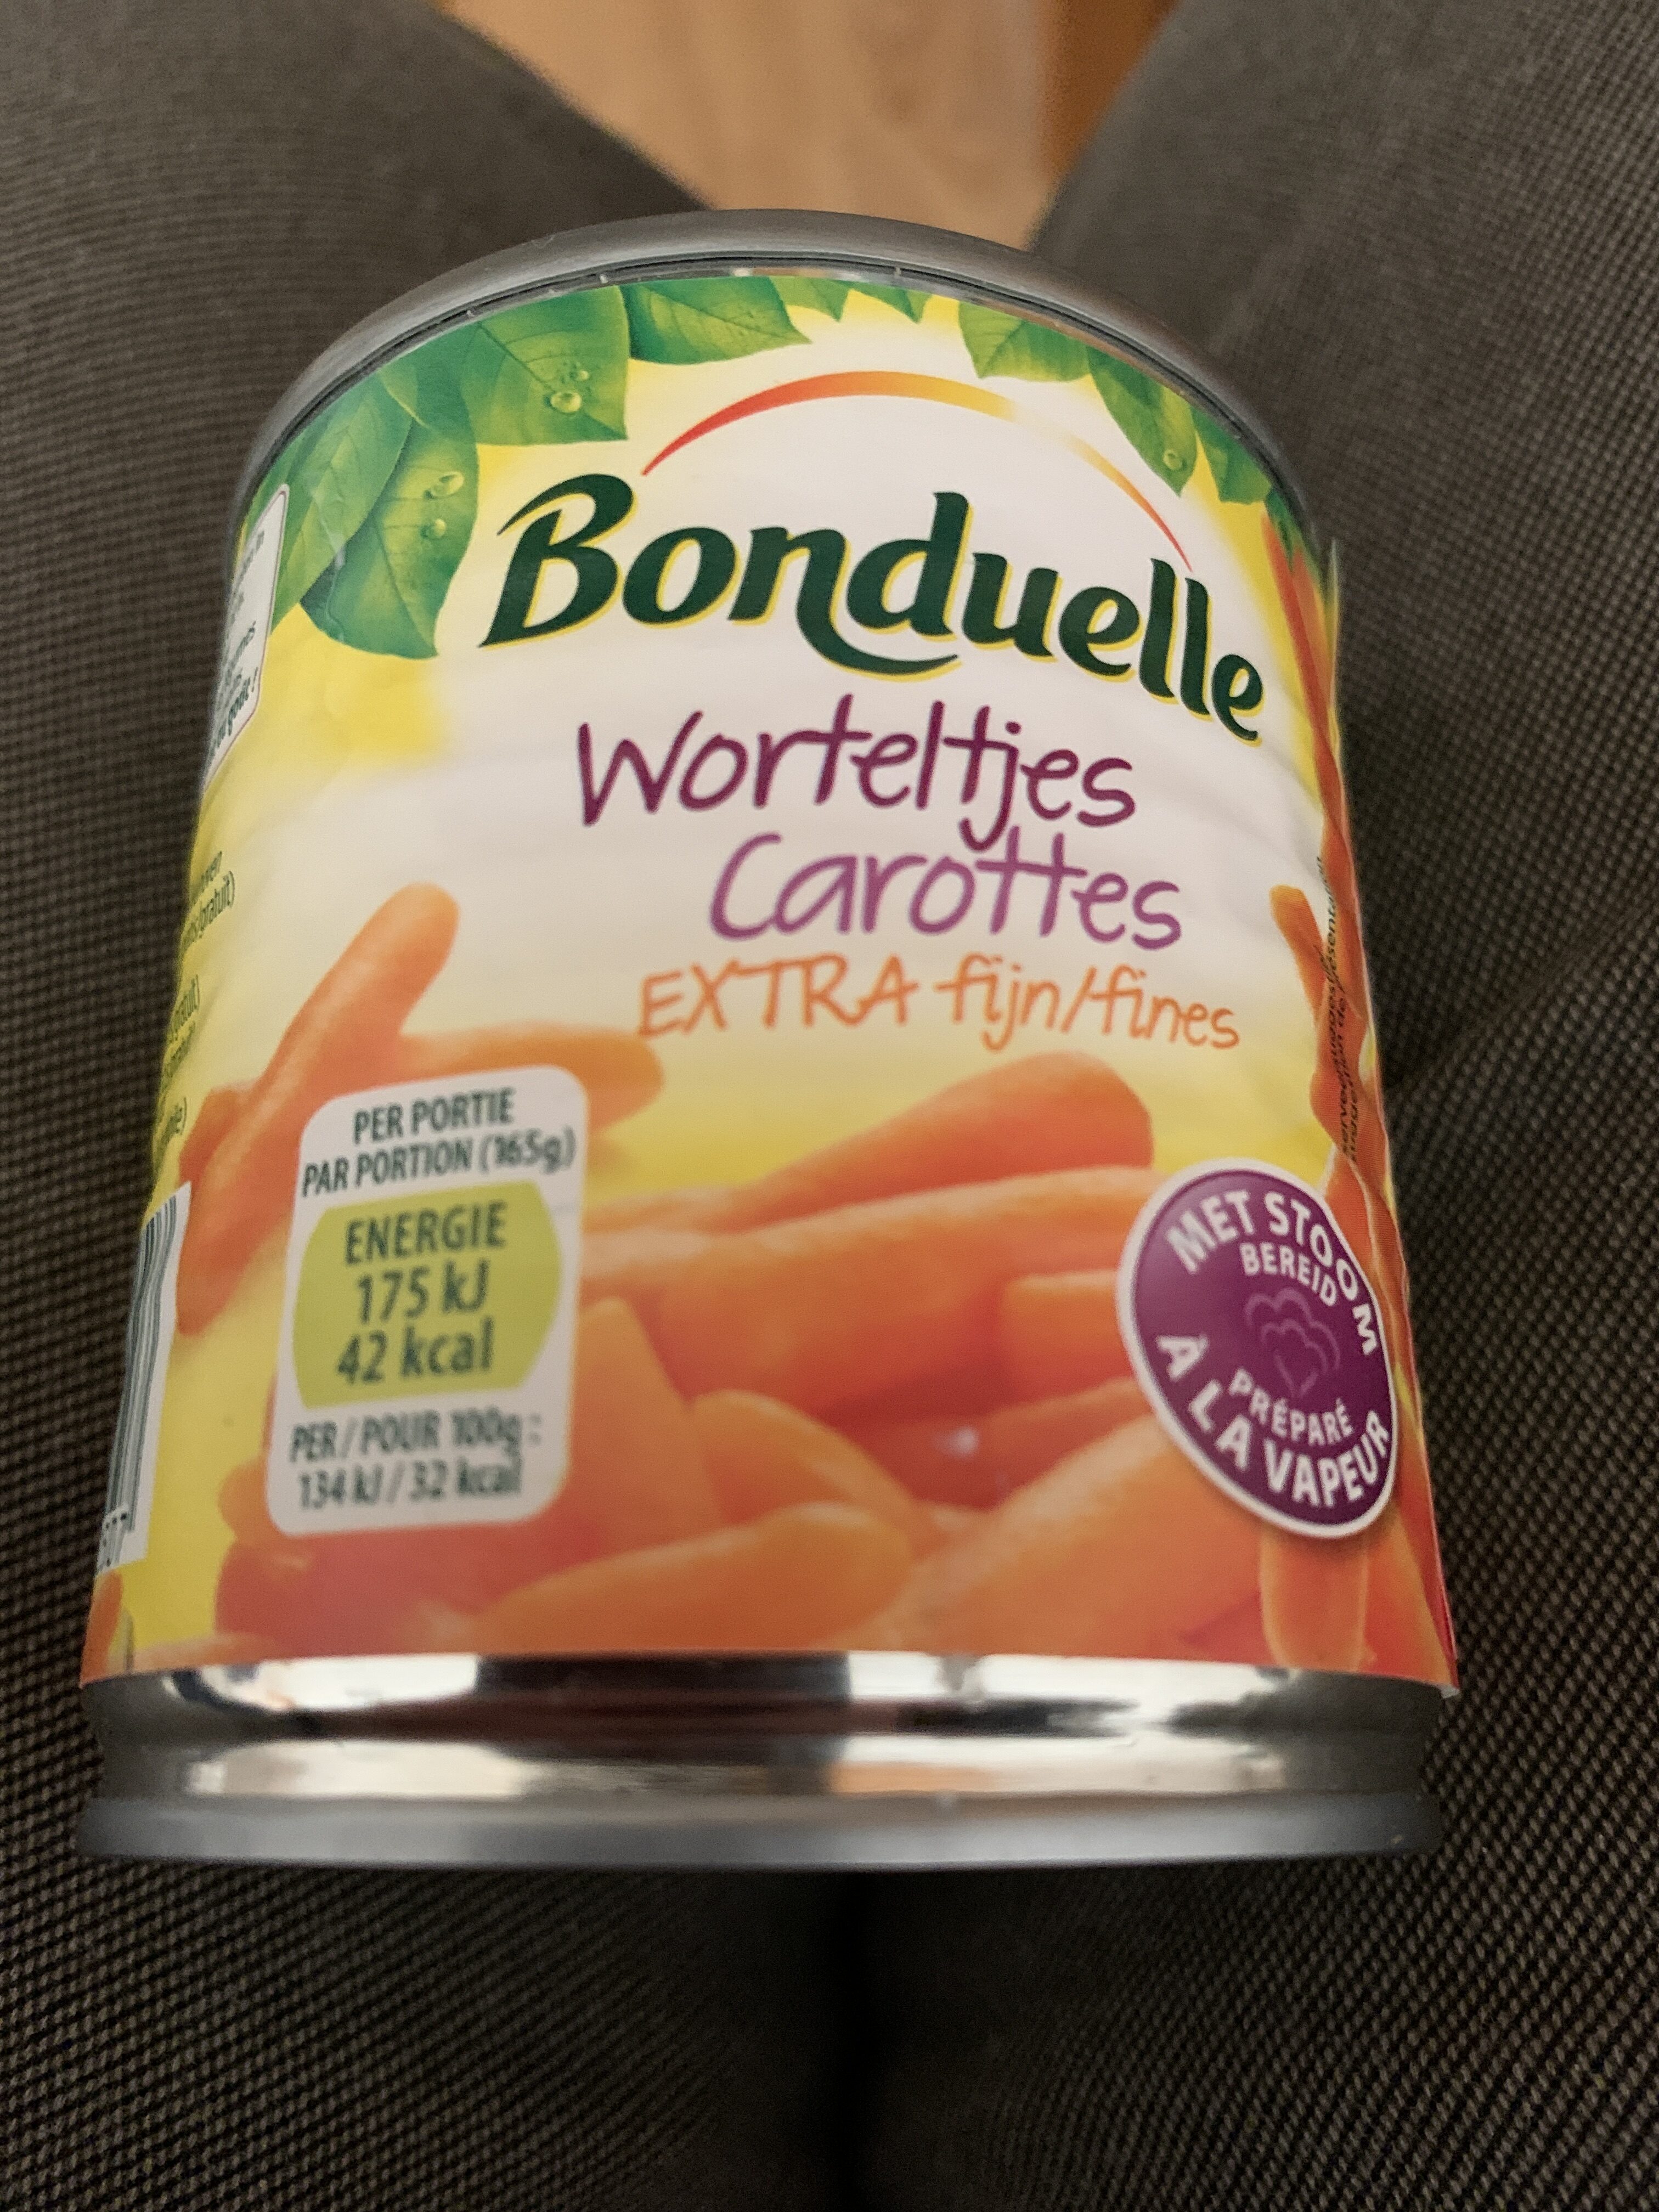 worteltjes - Product